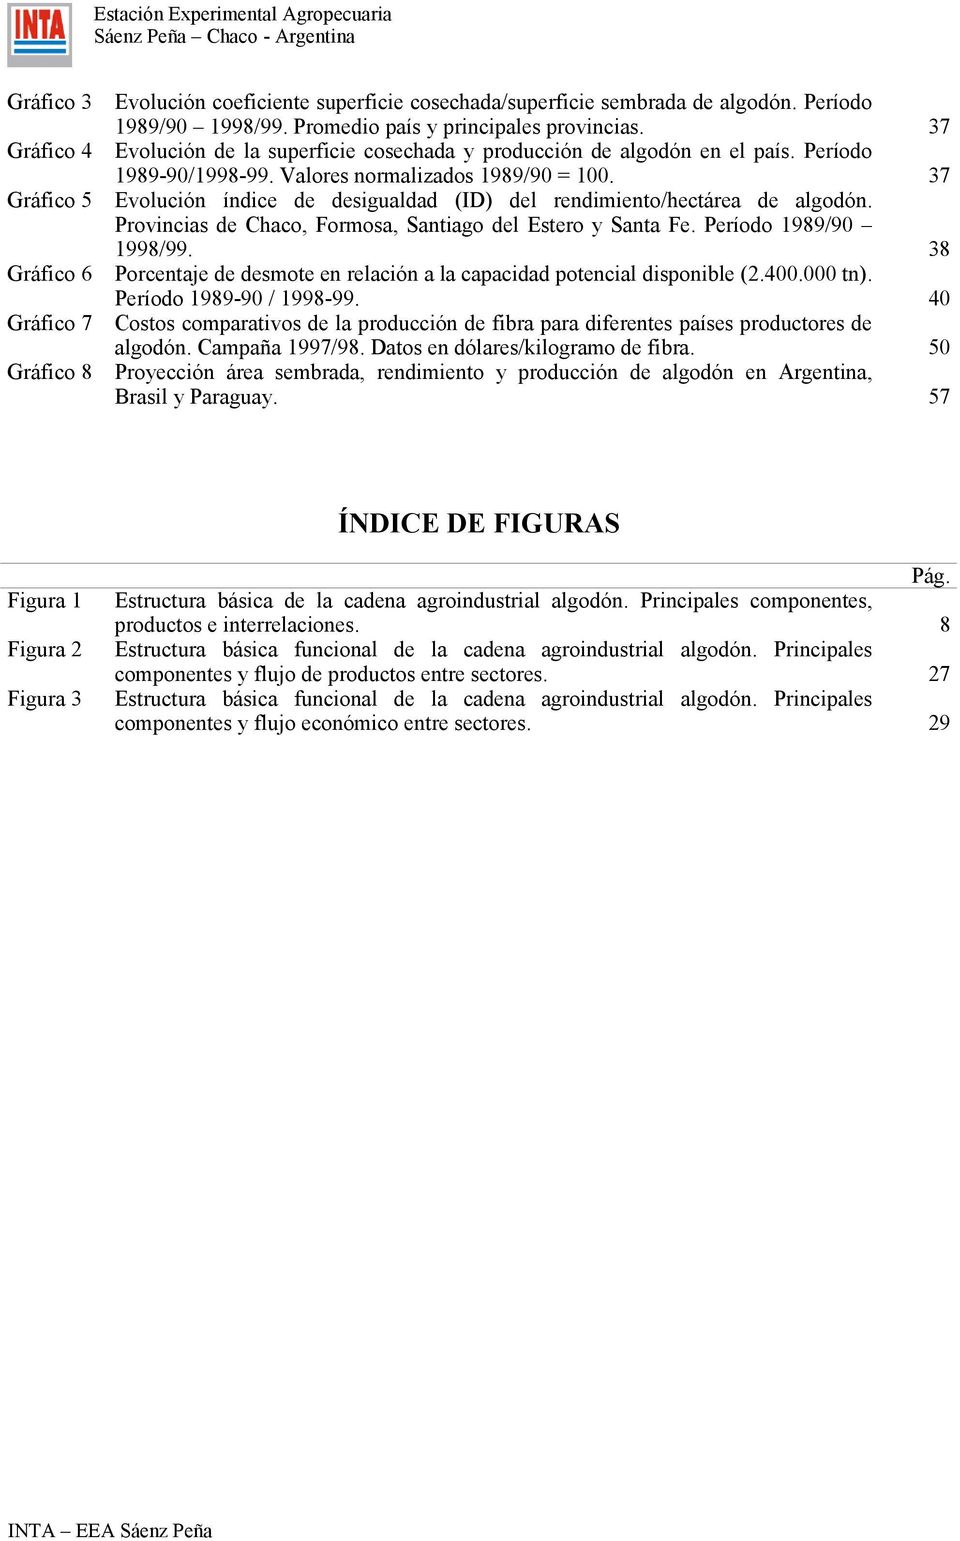 37 Evolución índice de desigualdad (ID) del rendimiento/hectárea de algodón. Provincias de Chaco, Formosa, Santiago del Estero y Santa Fe. Período 1989/90 1998/99.